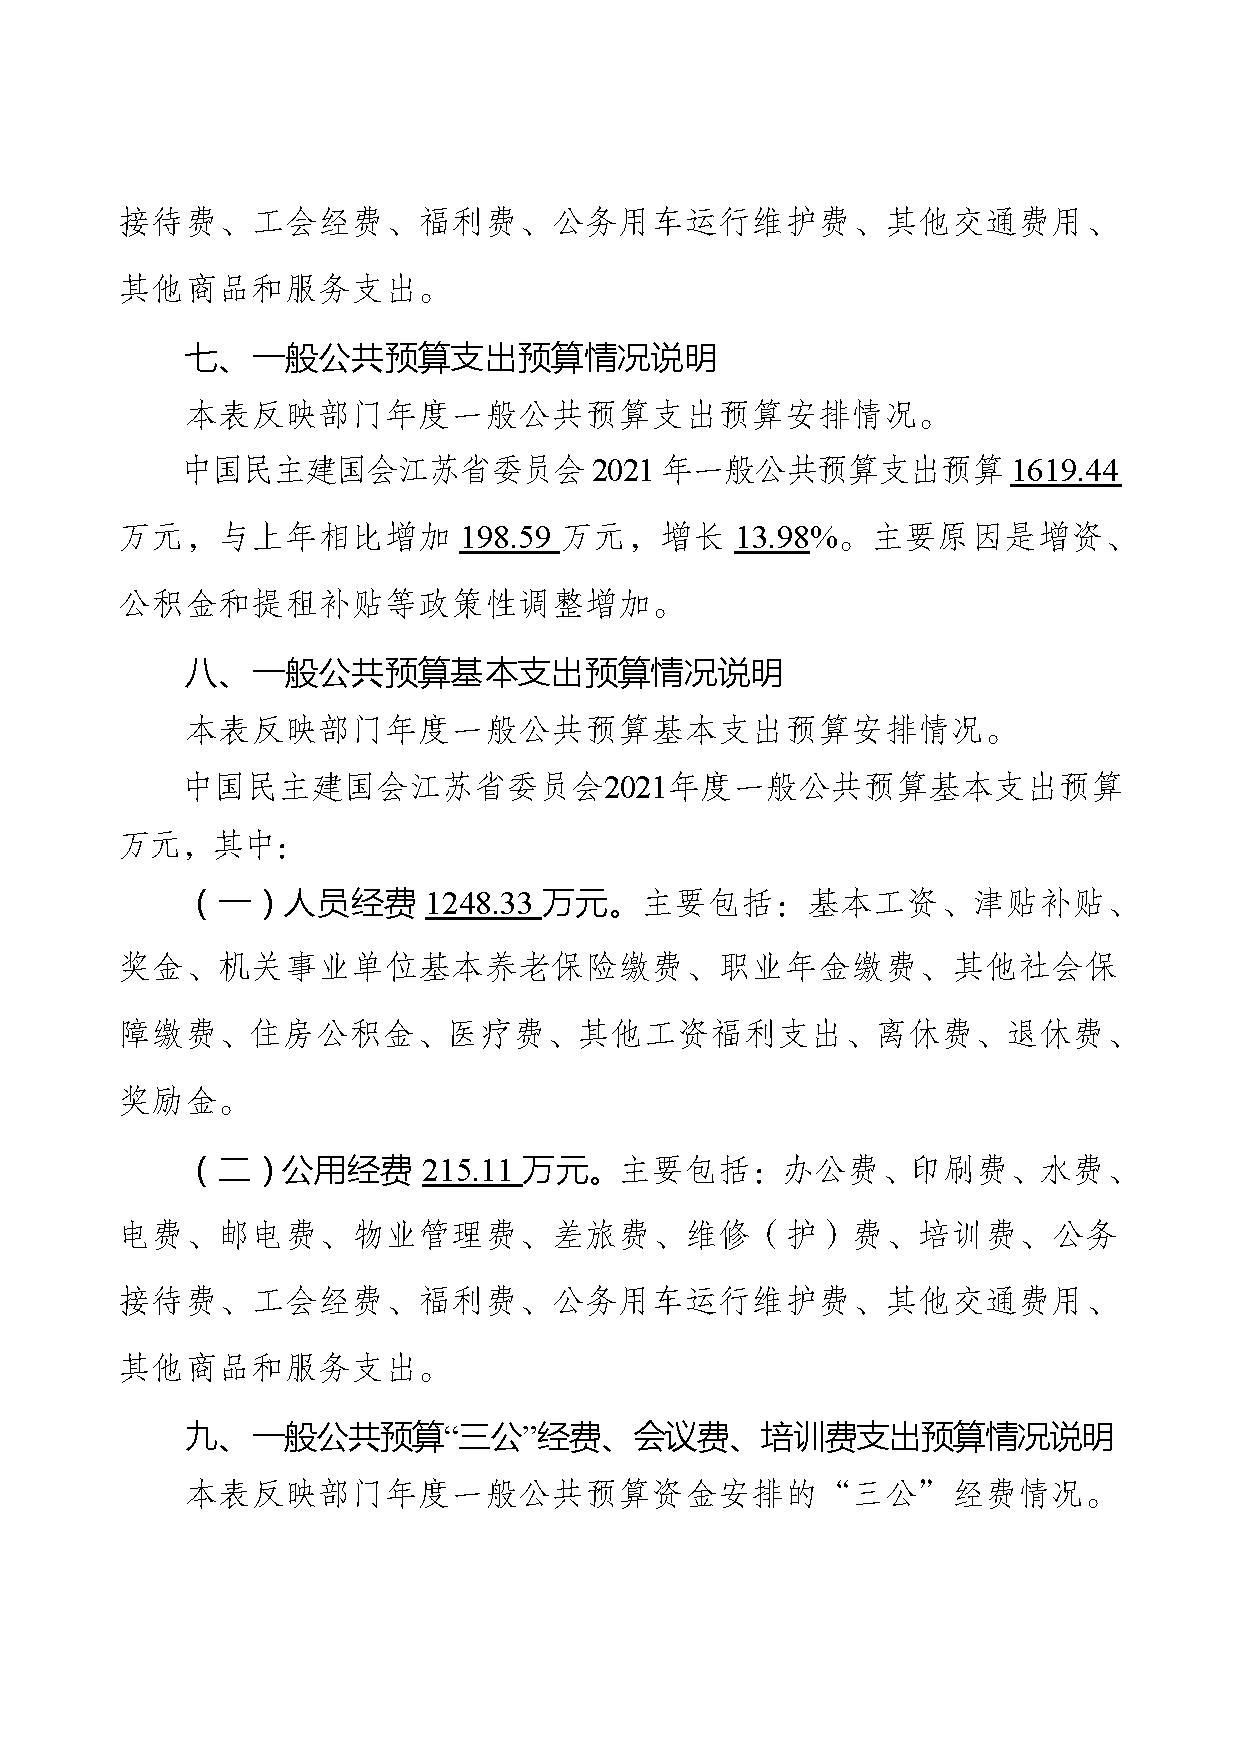 2021年度中国民主建国会江苏省委员会部门预算公开-28.jpg